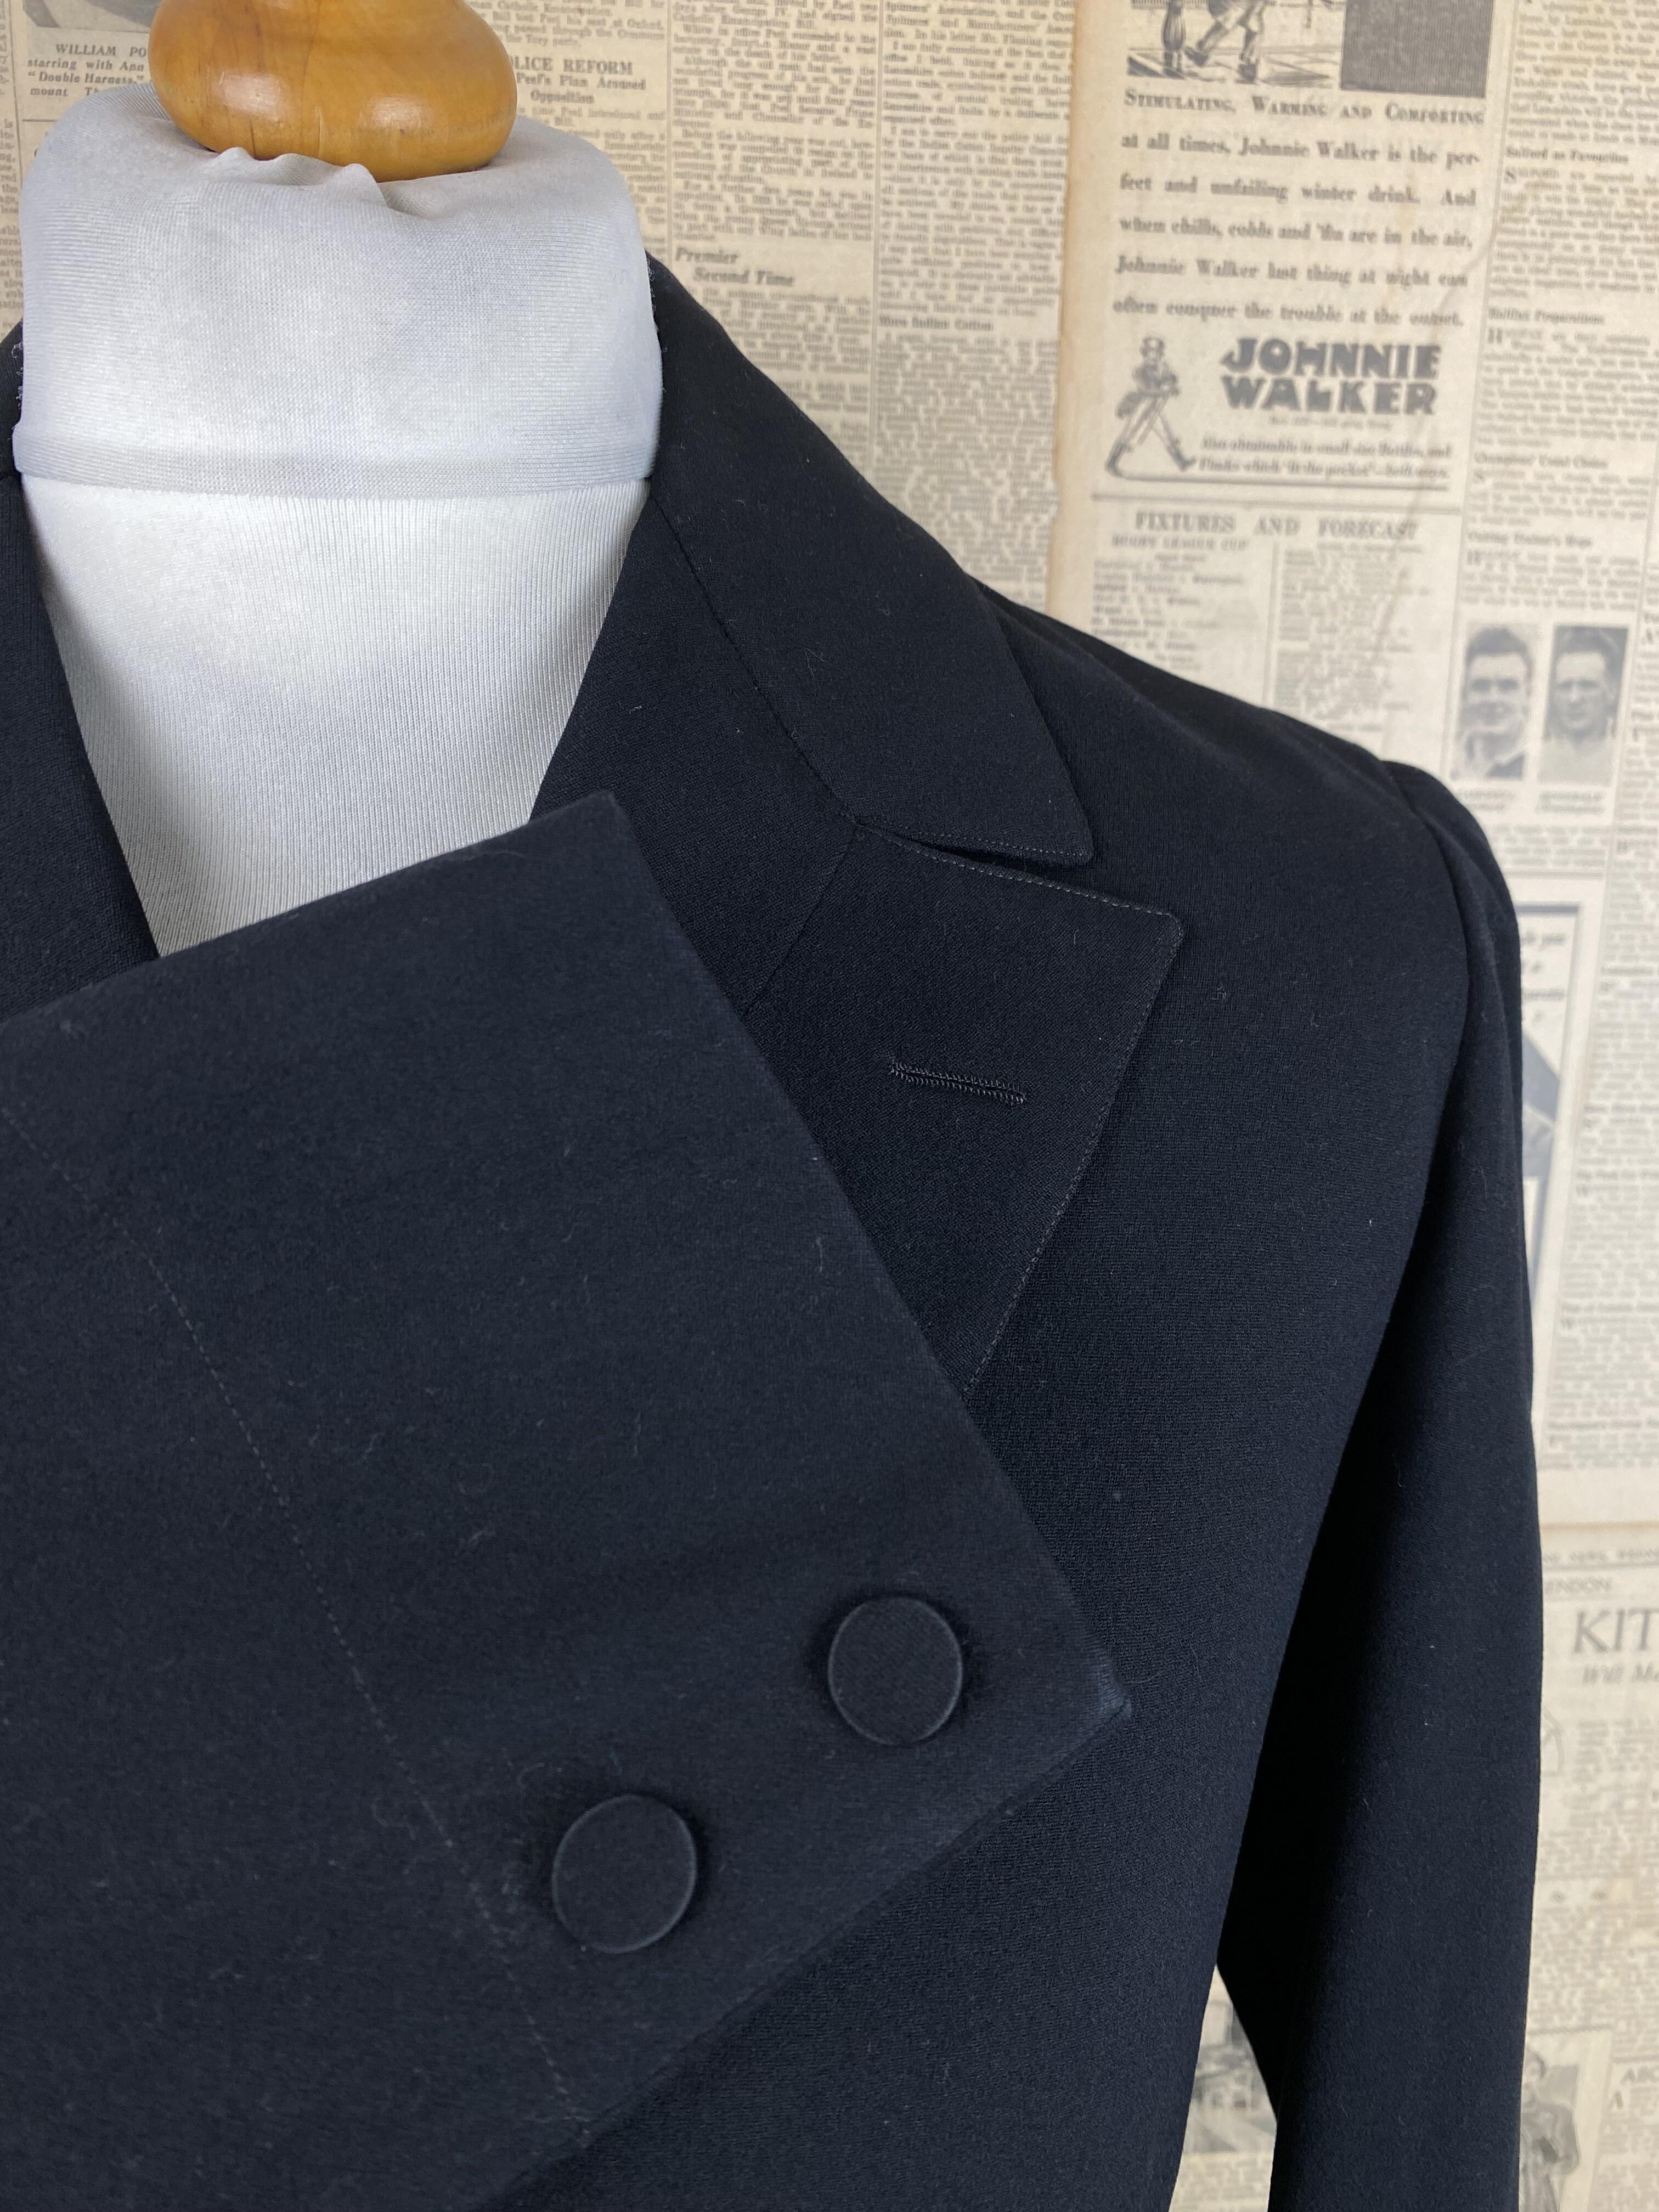 Vintage 1920's six button frock coat size 40 long